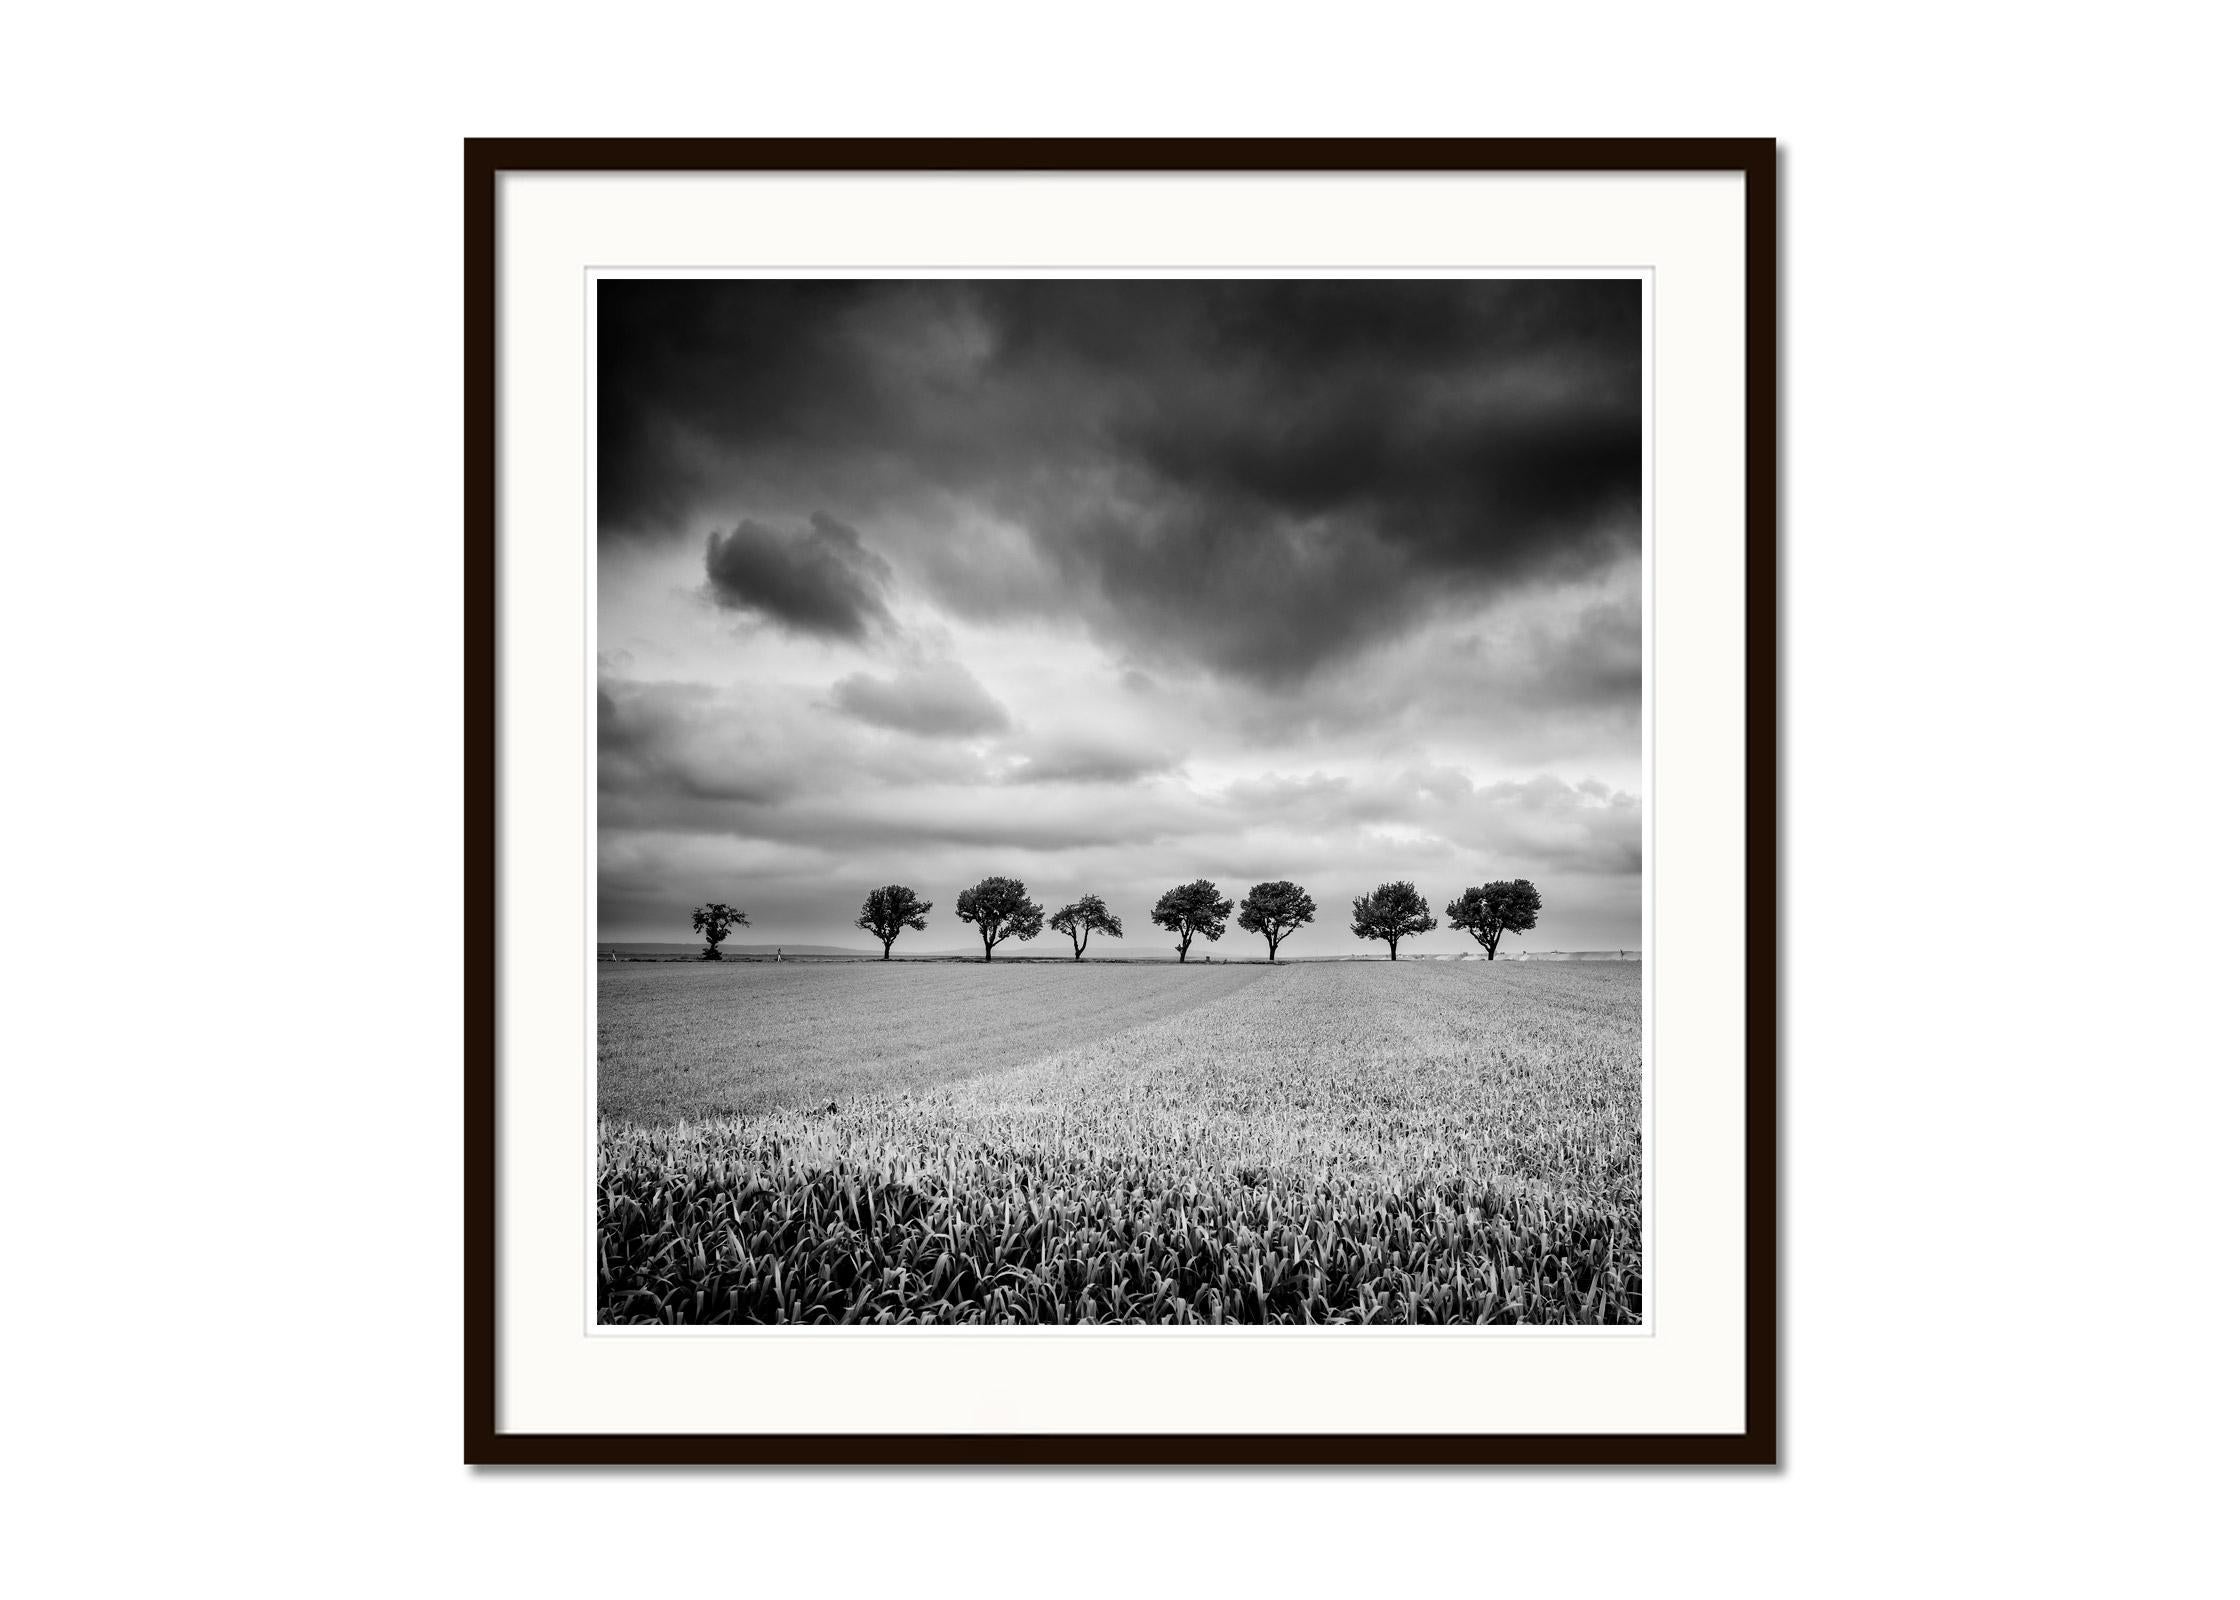 Zehn Kirschbaumbäume, stürmische Wolken, Schwarz-Weiß, Landschaft, Kunstfotografie (Grau), Landscape Print, von Gerald Berghammer